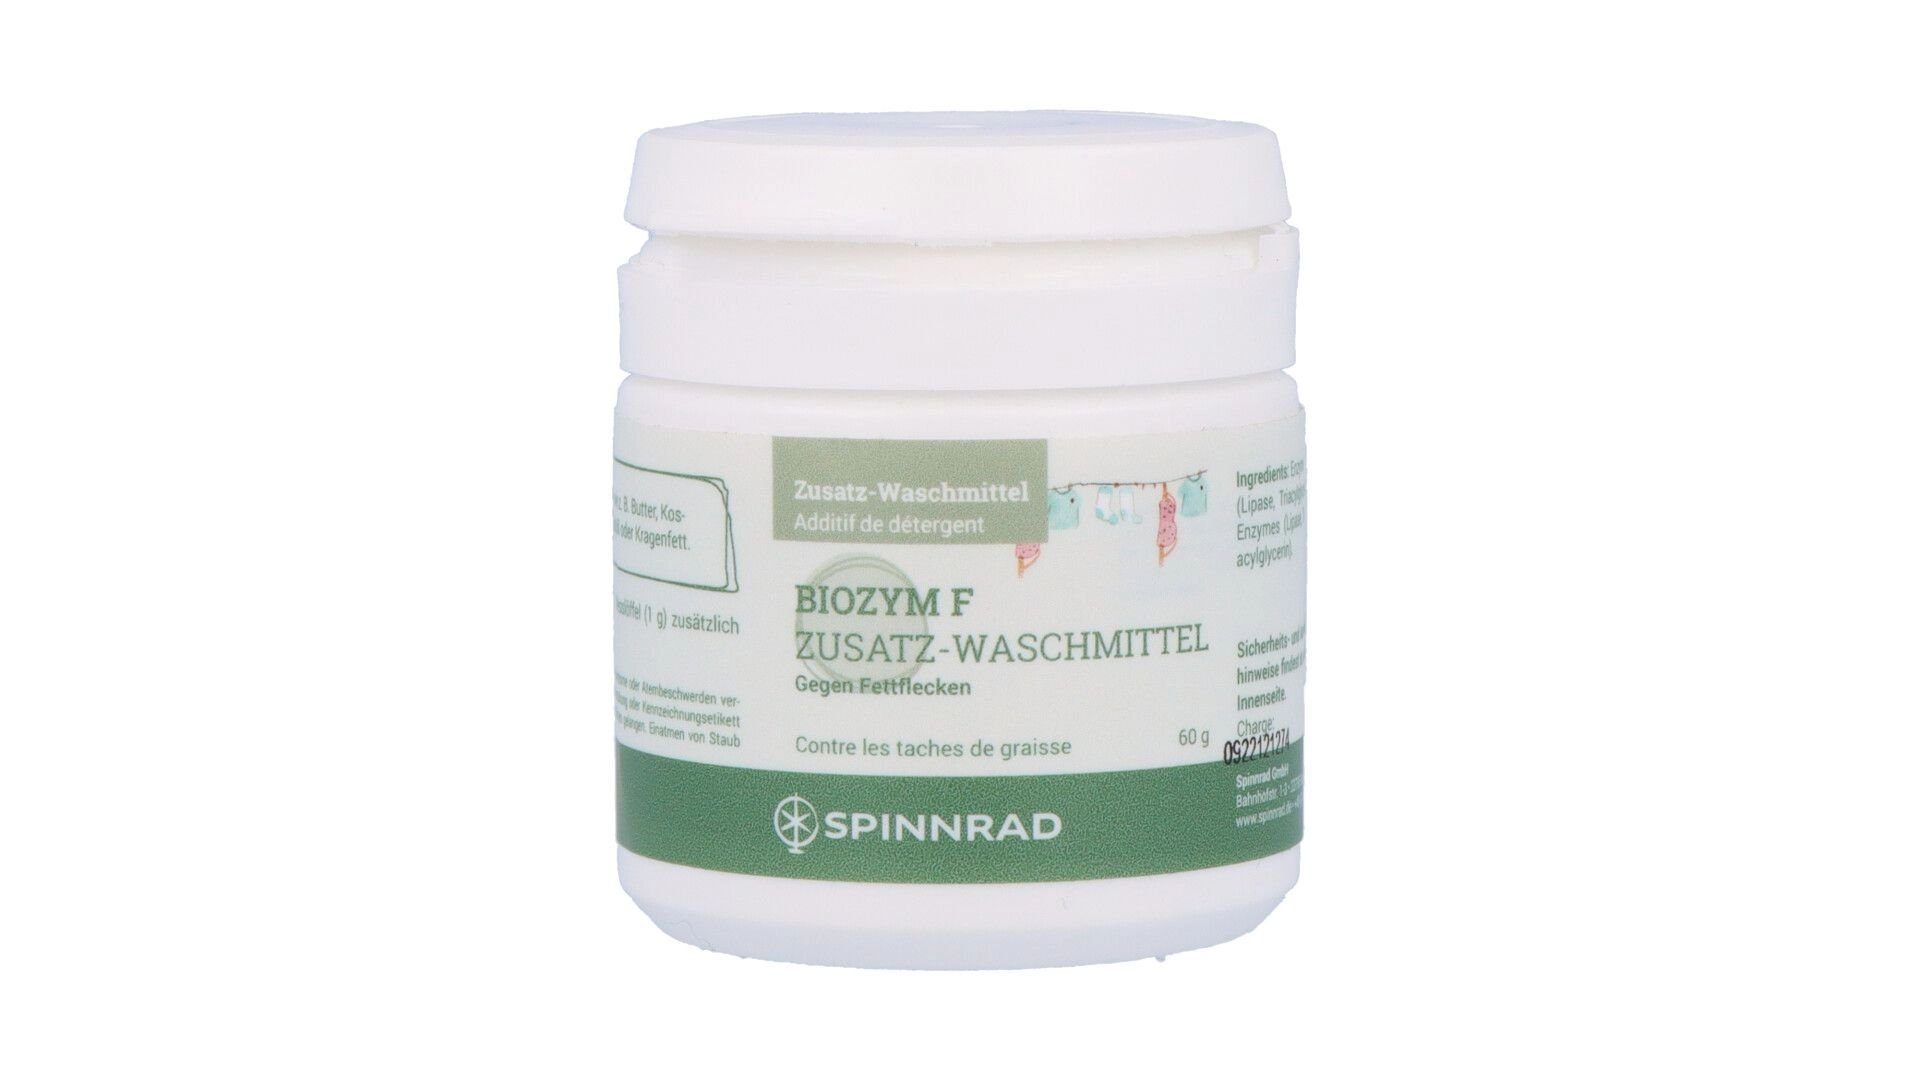 Spinnrad GmbH g Biozym F Fettflecken 60 gegen Waschenzymzusatz - Spezialwaschmittel